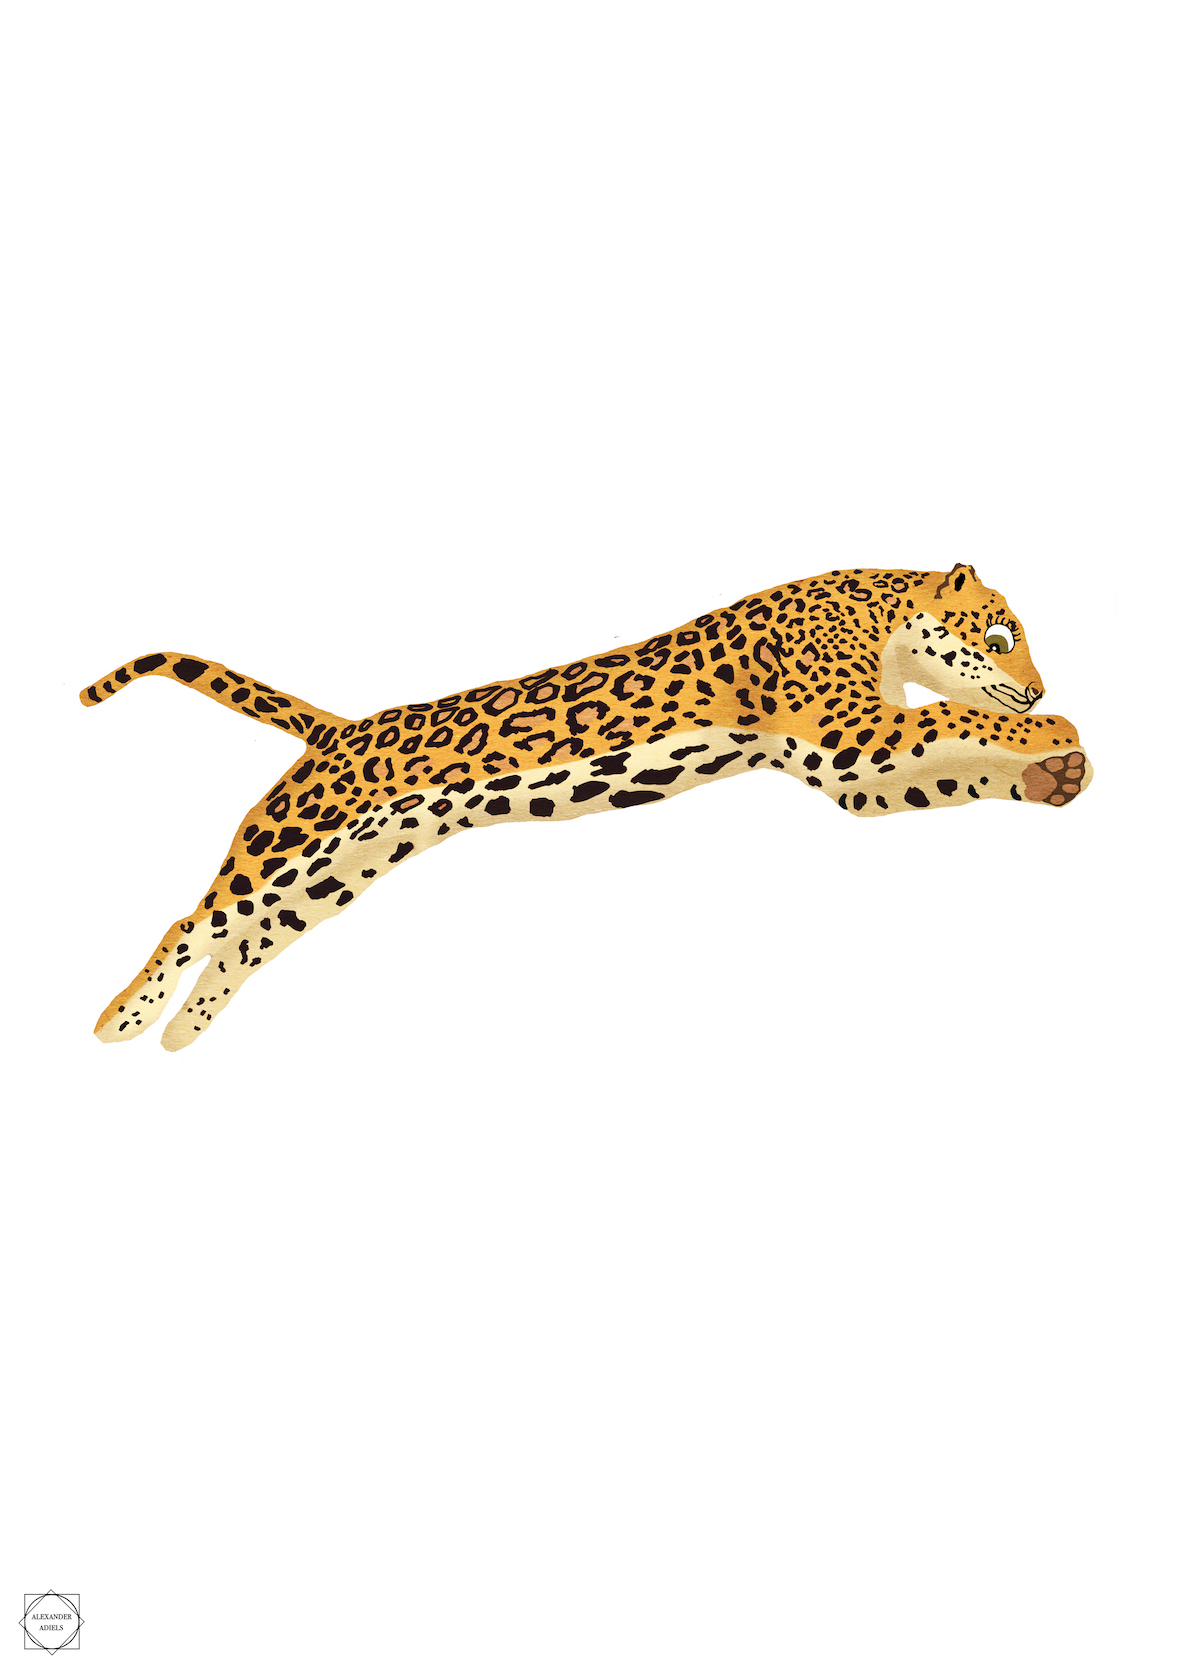 Jaguar_A3